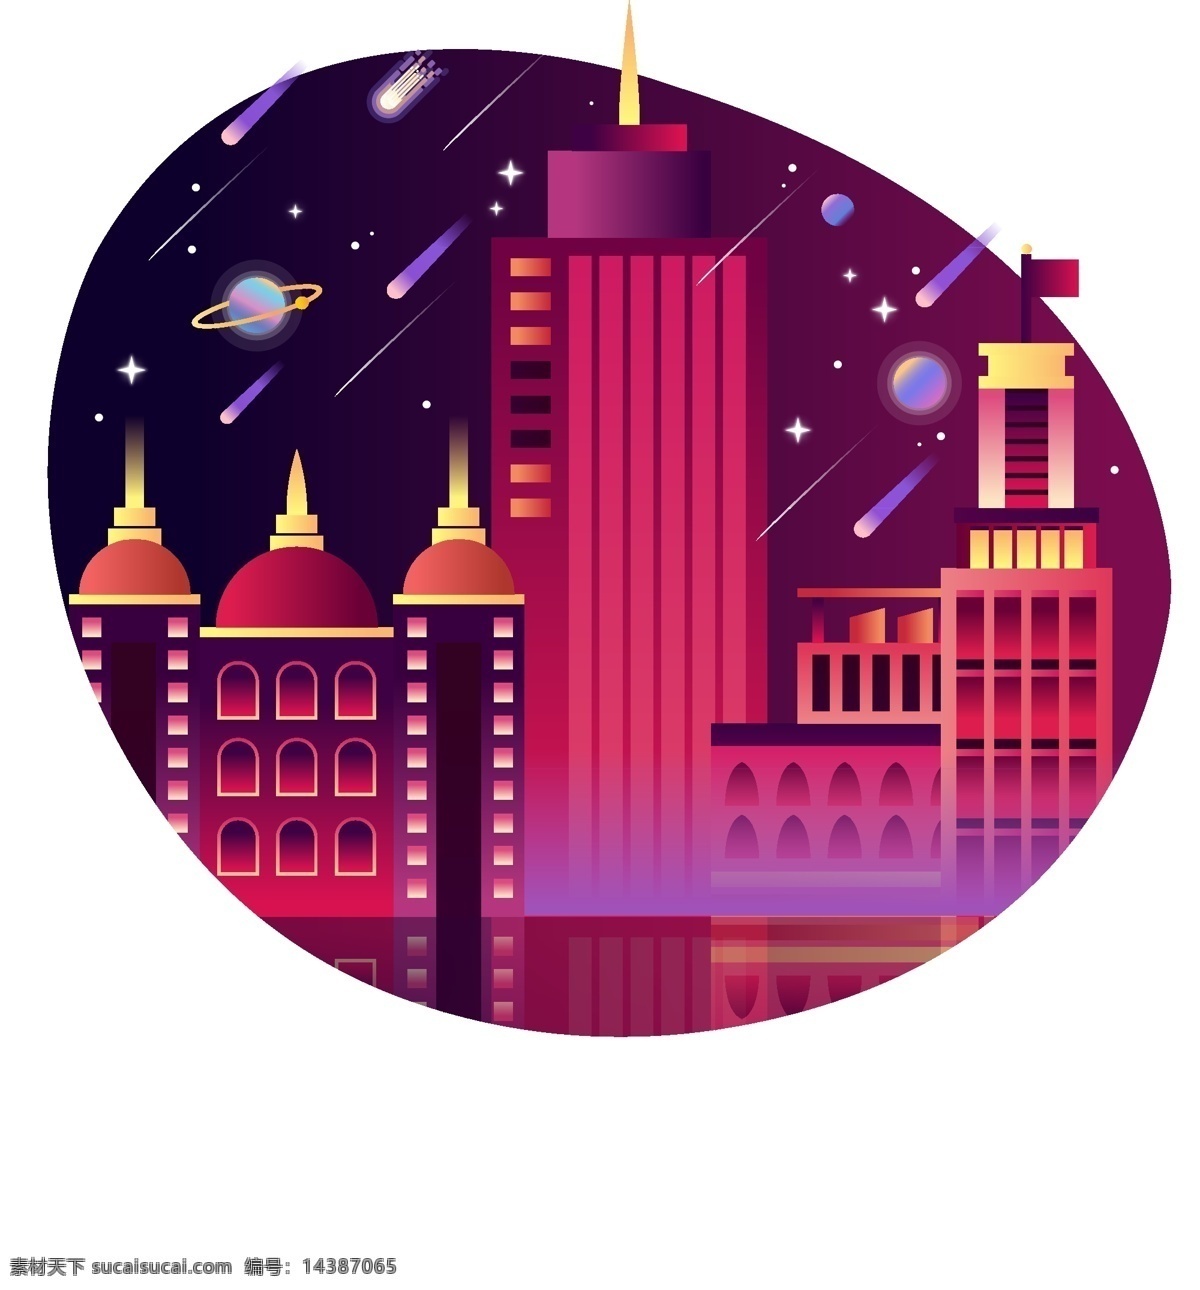 城市 夜景 彩色 扁平 矢量 商用 元素 星星 建筑 绚丽 炫彩 夜色 渐变 多彩 流星 行星 高楼 大厦